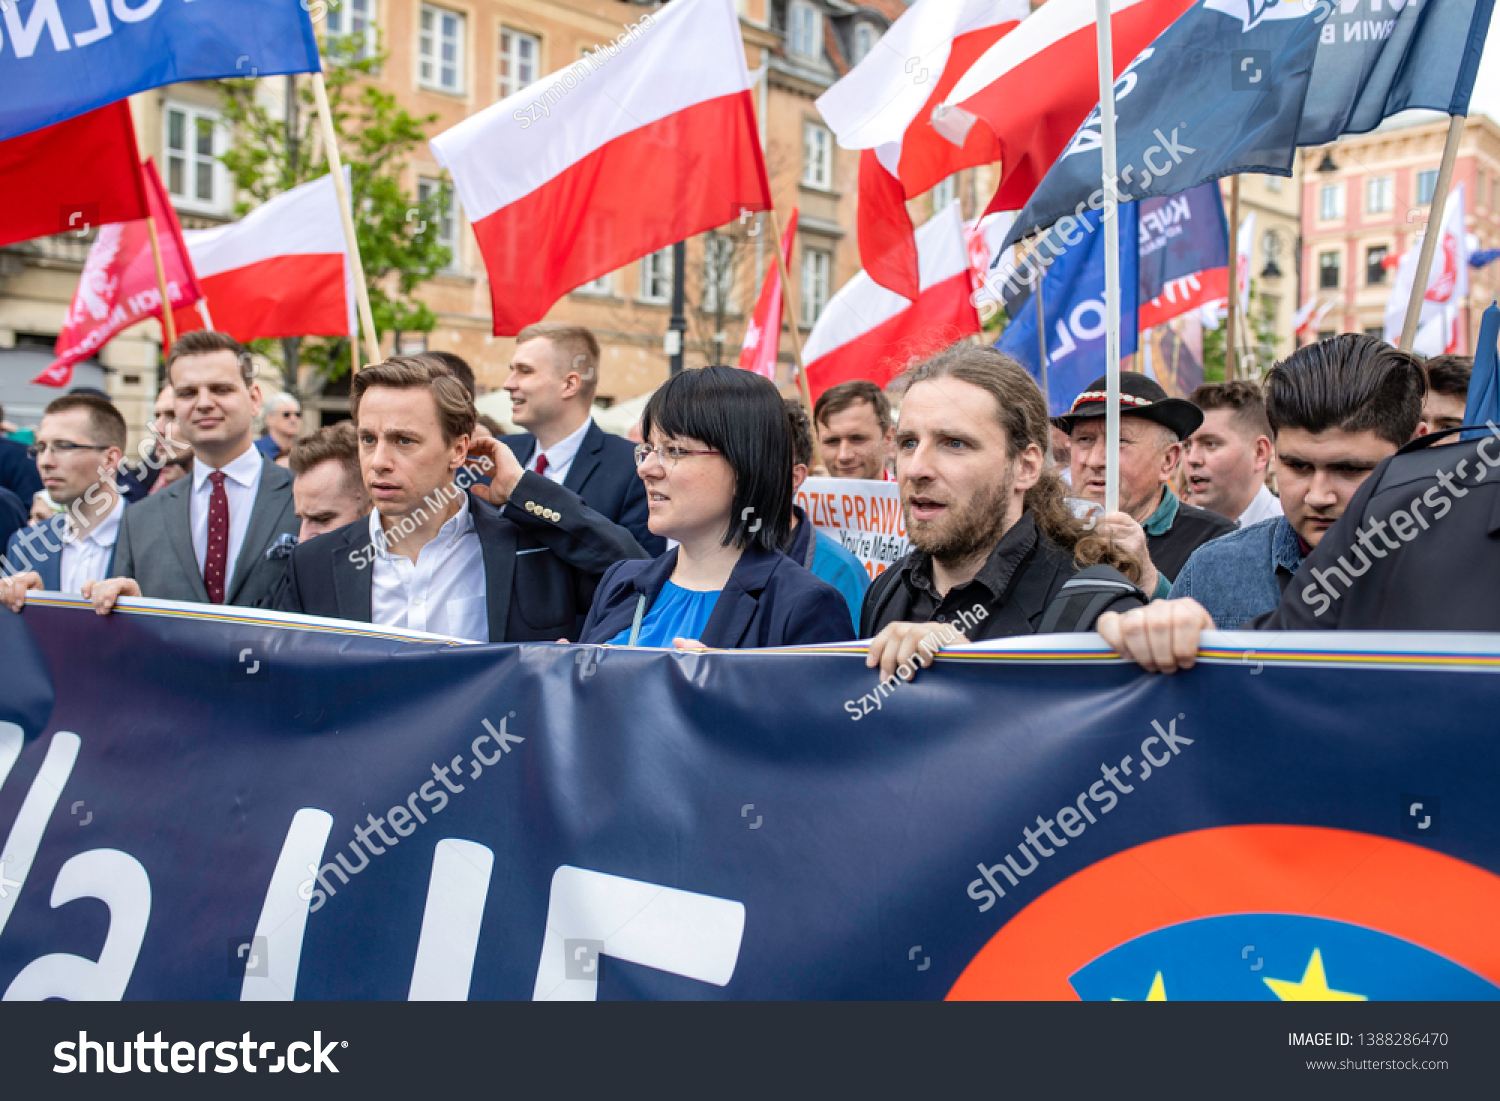 Warsaw Poland 05012019 Nationalists Konfederacja Korwin Stock Photo Edit Now 1388286470